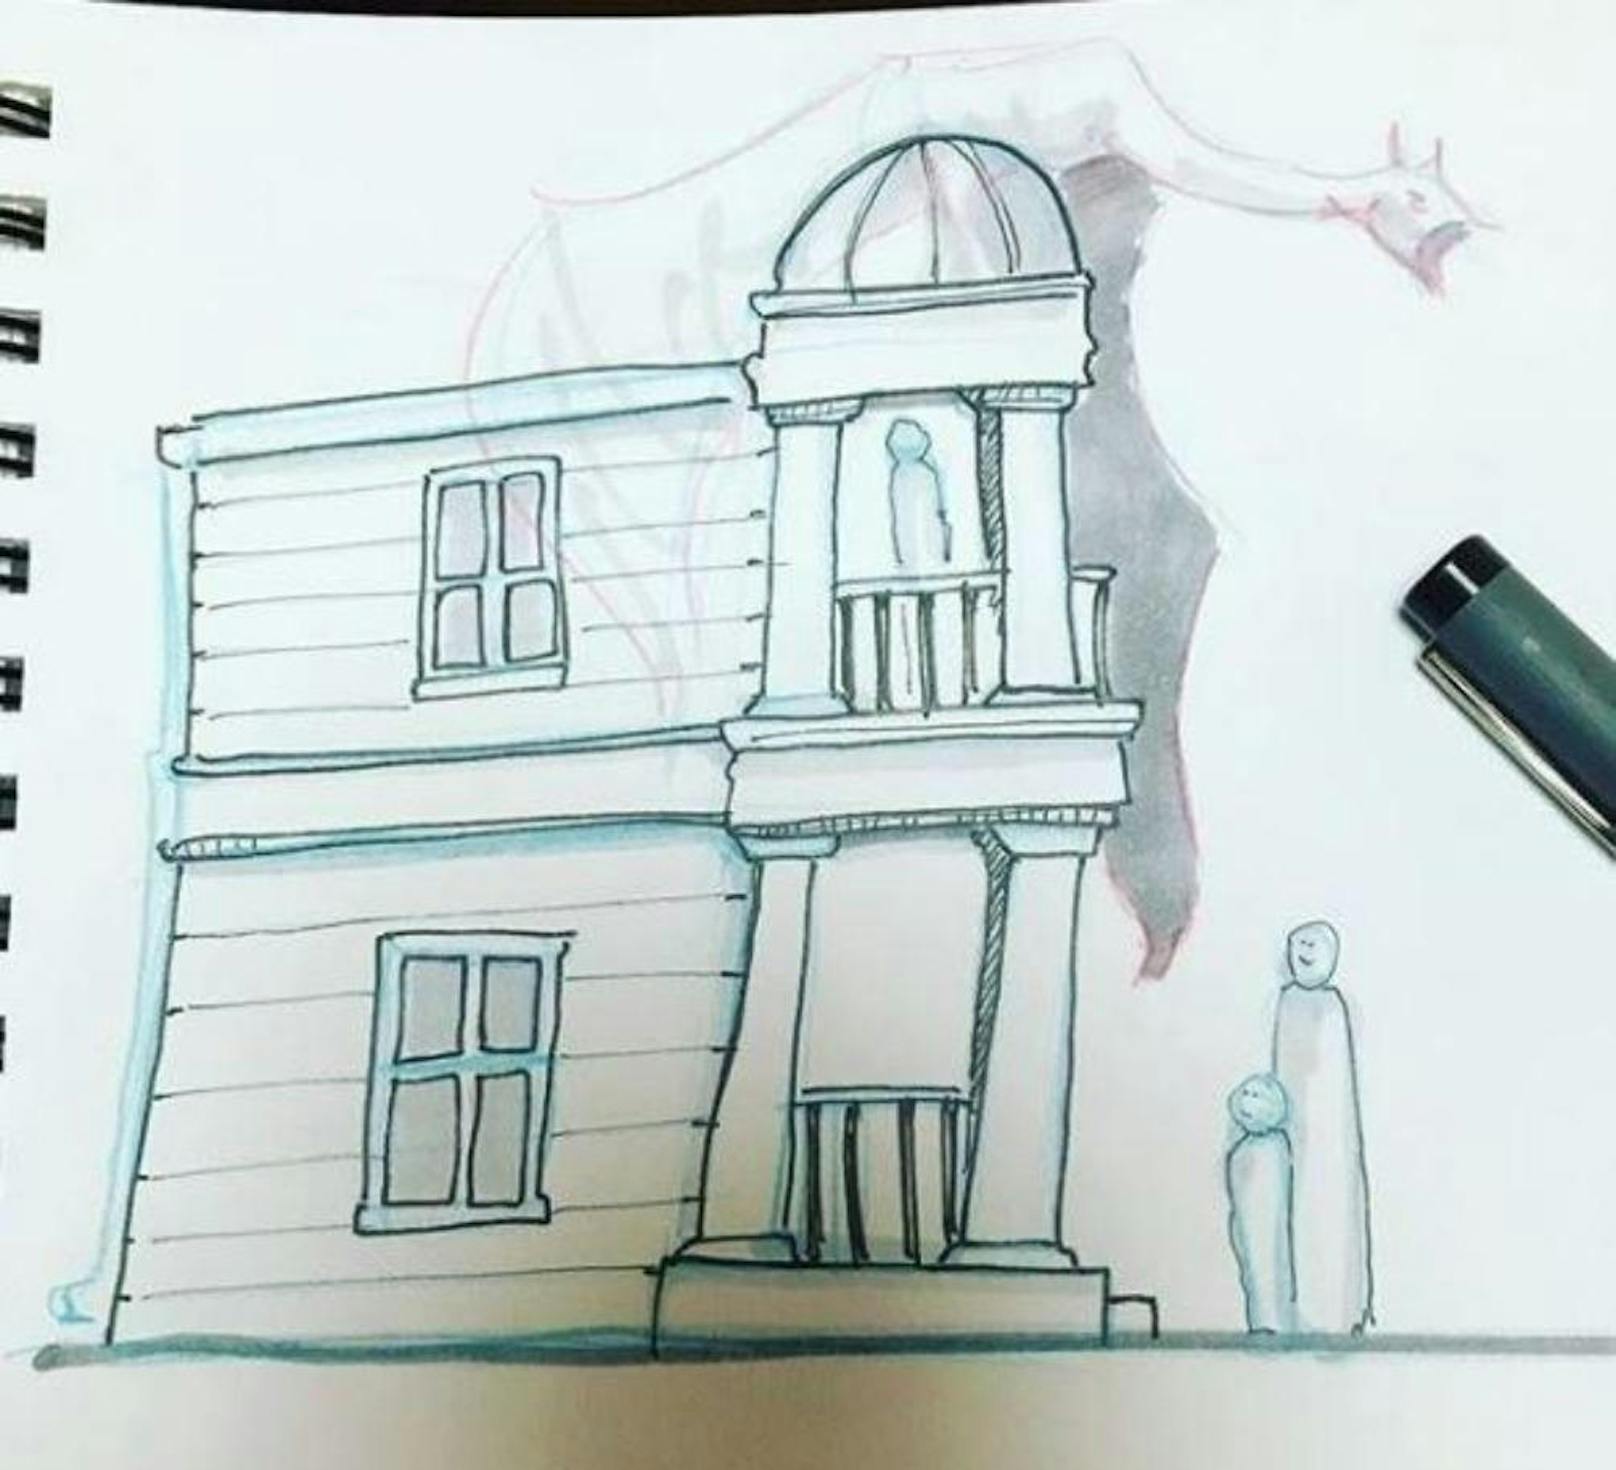 Der Familienvater aus Seattle kündete kurzerhand seinen Job und begann Vollzeit zu zeichnen, zu bauen und seinen Traum zu verwirklichen. Hier eine Skizze der Zaubererbank Gringotts, die von Kobolden geführt wird.